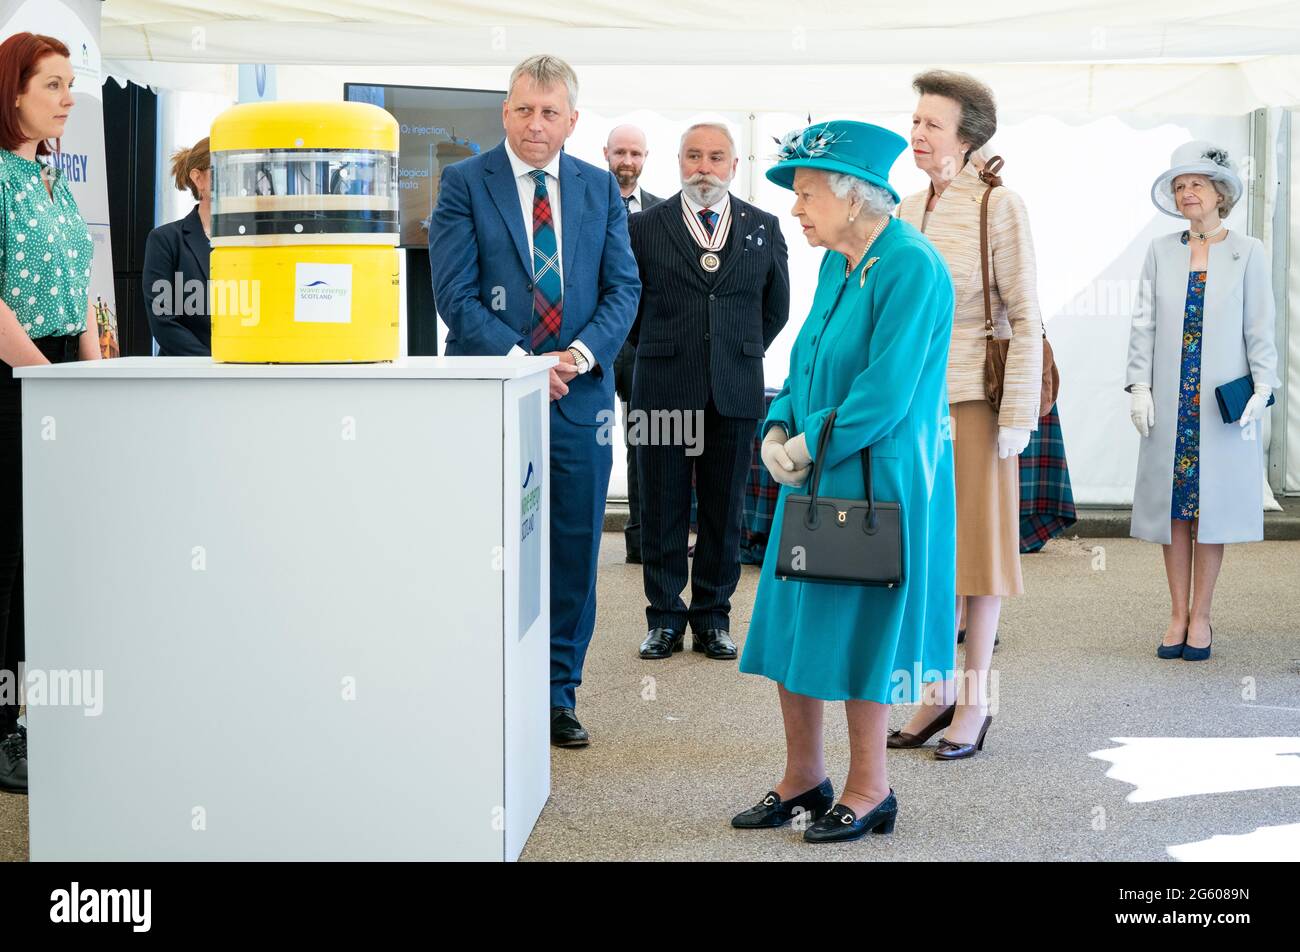 La regina Elisabetta II e la principessa Royal sono mostrate come un modello di convertitore di energia a onde durante una visita all'Edinburgh Climate Change Institute, come parte del suo tradizionale viaggio in Scozia per la settimana Holyrood. Data immagine: Giovedì 1 luglio 2021. Foto Stock